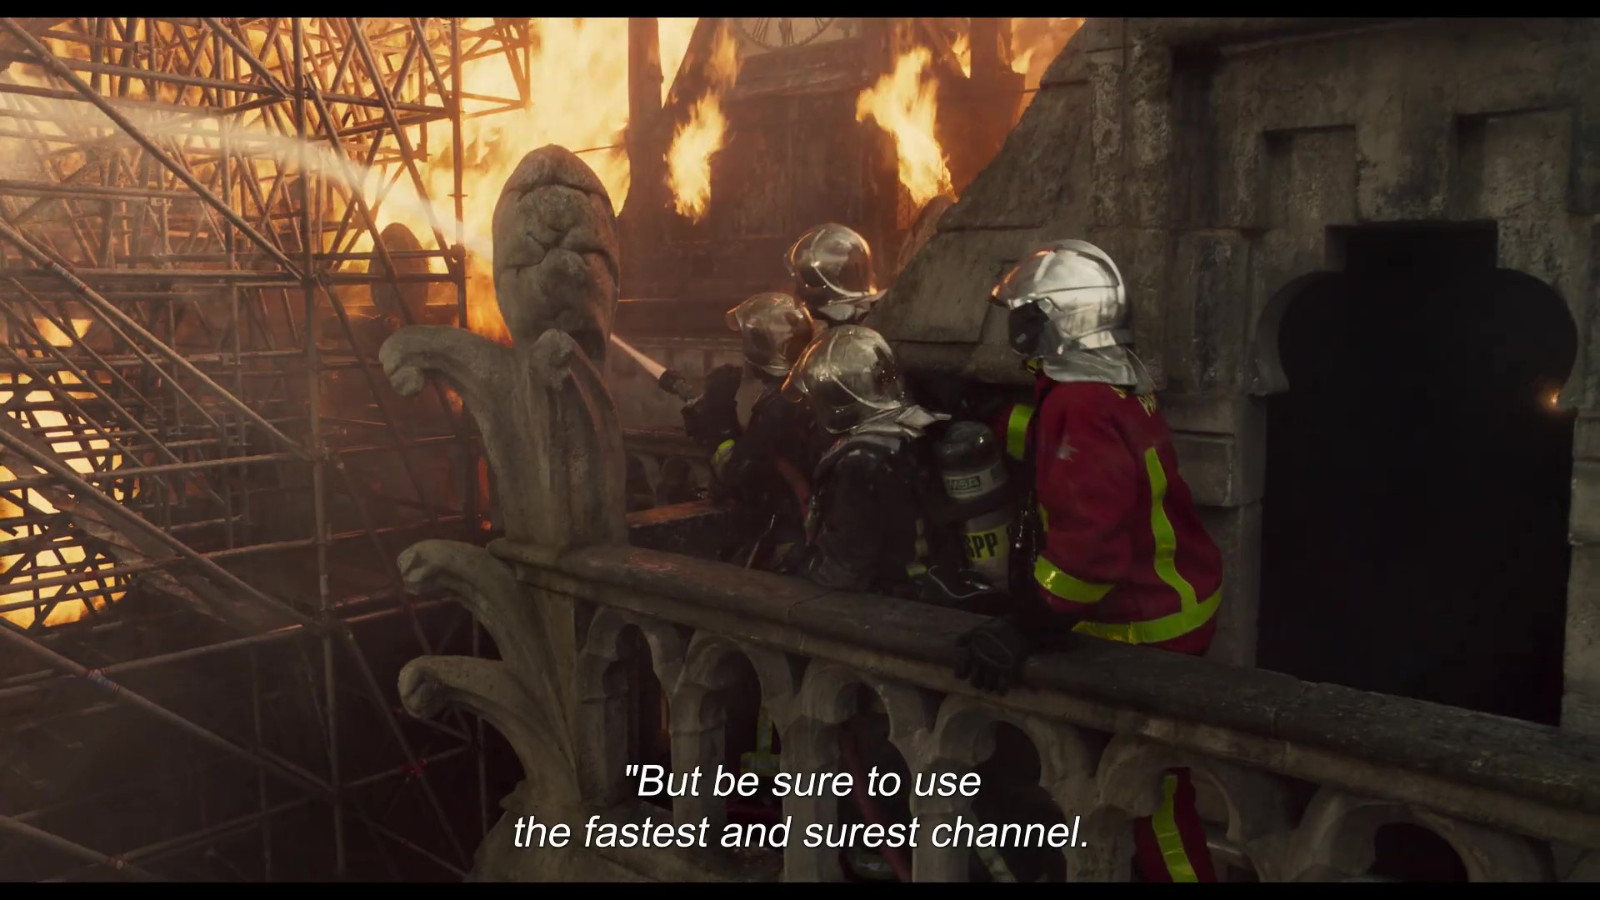 育碧新VR游戏将于3月16日上线 基于纪录片《燃烧的巴黎圣母院》